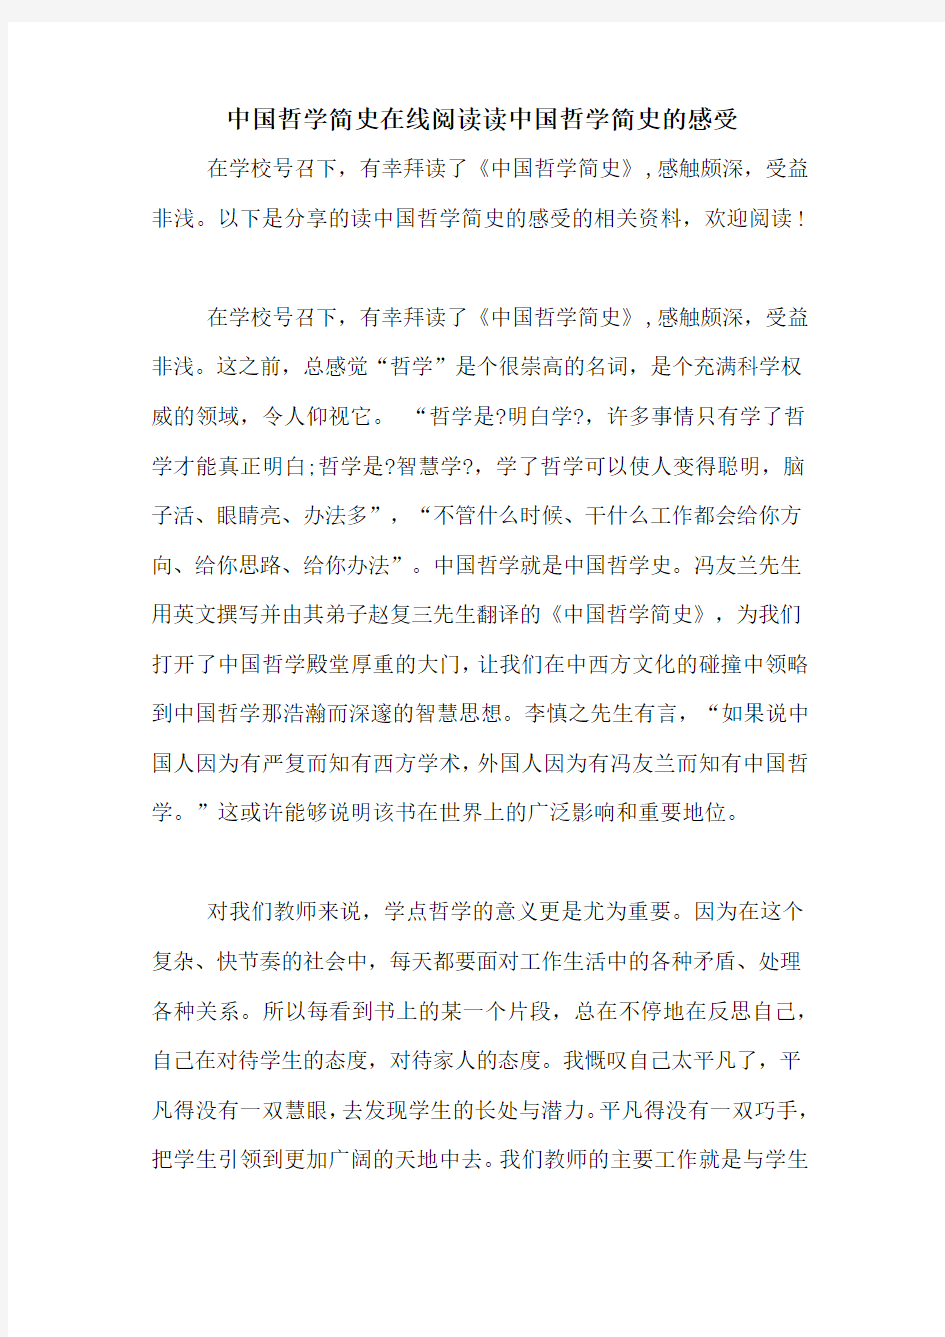 中国哲学简史在线阅读读中国哲学简史的感受